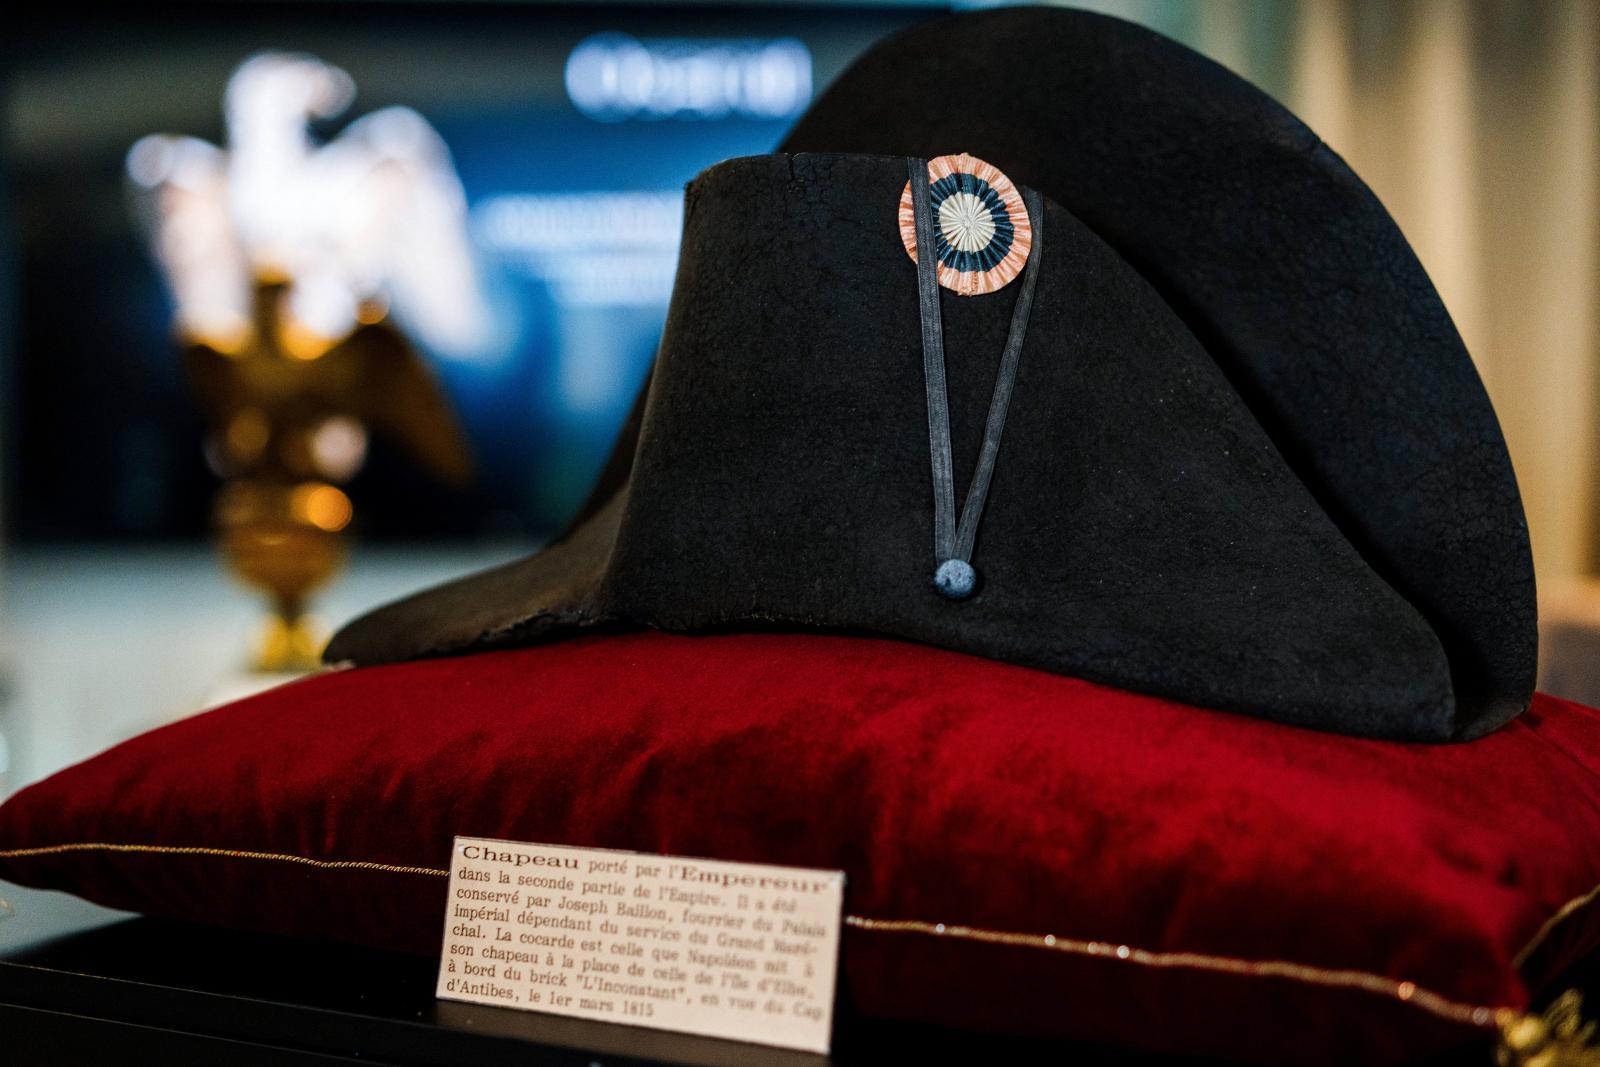 ฝรั่งเศสจัดประมูล “หมวกนโปเลียน” จบที่เกือบ 73 ล้านบาท